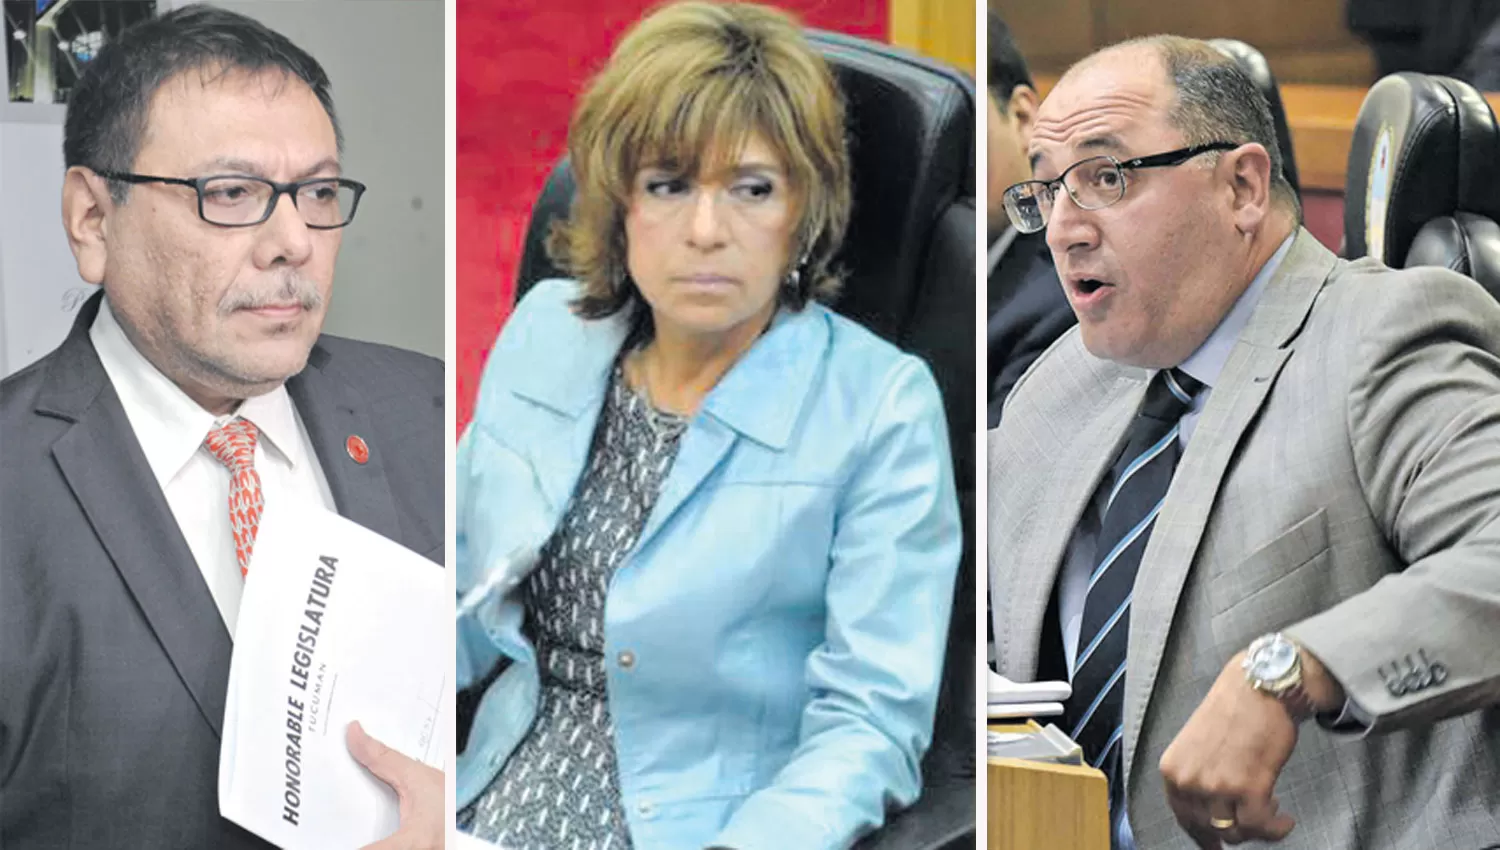 Los legisladores Fernando Valdez, Stella Maris Córdoba y Marcelo Caponio.